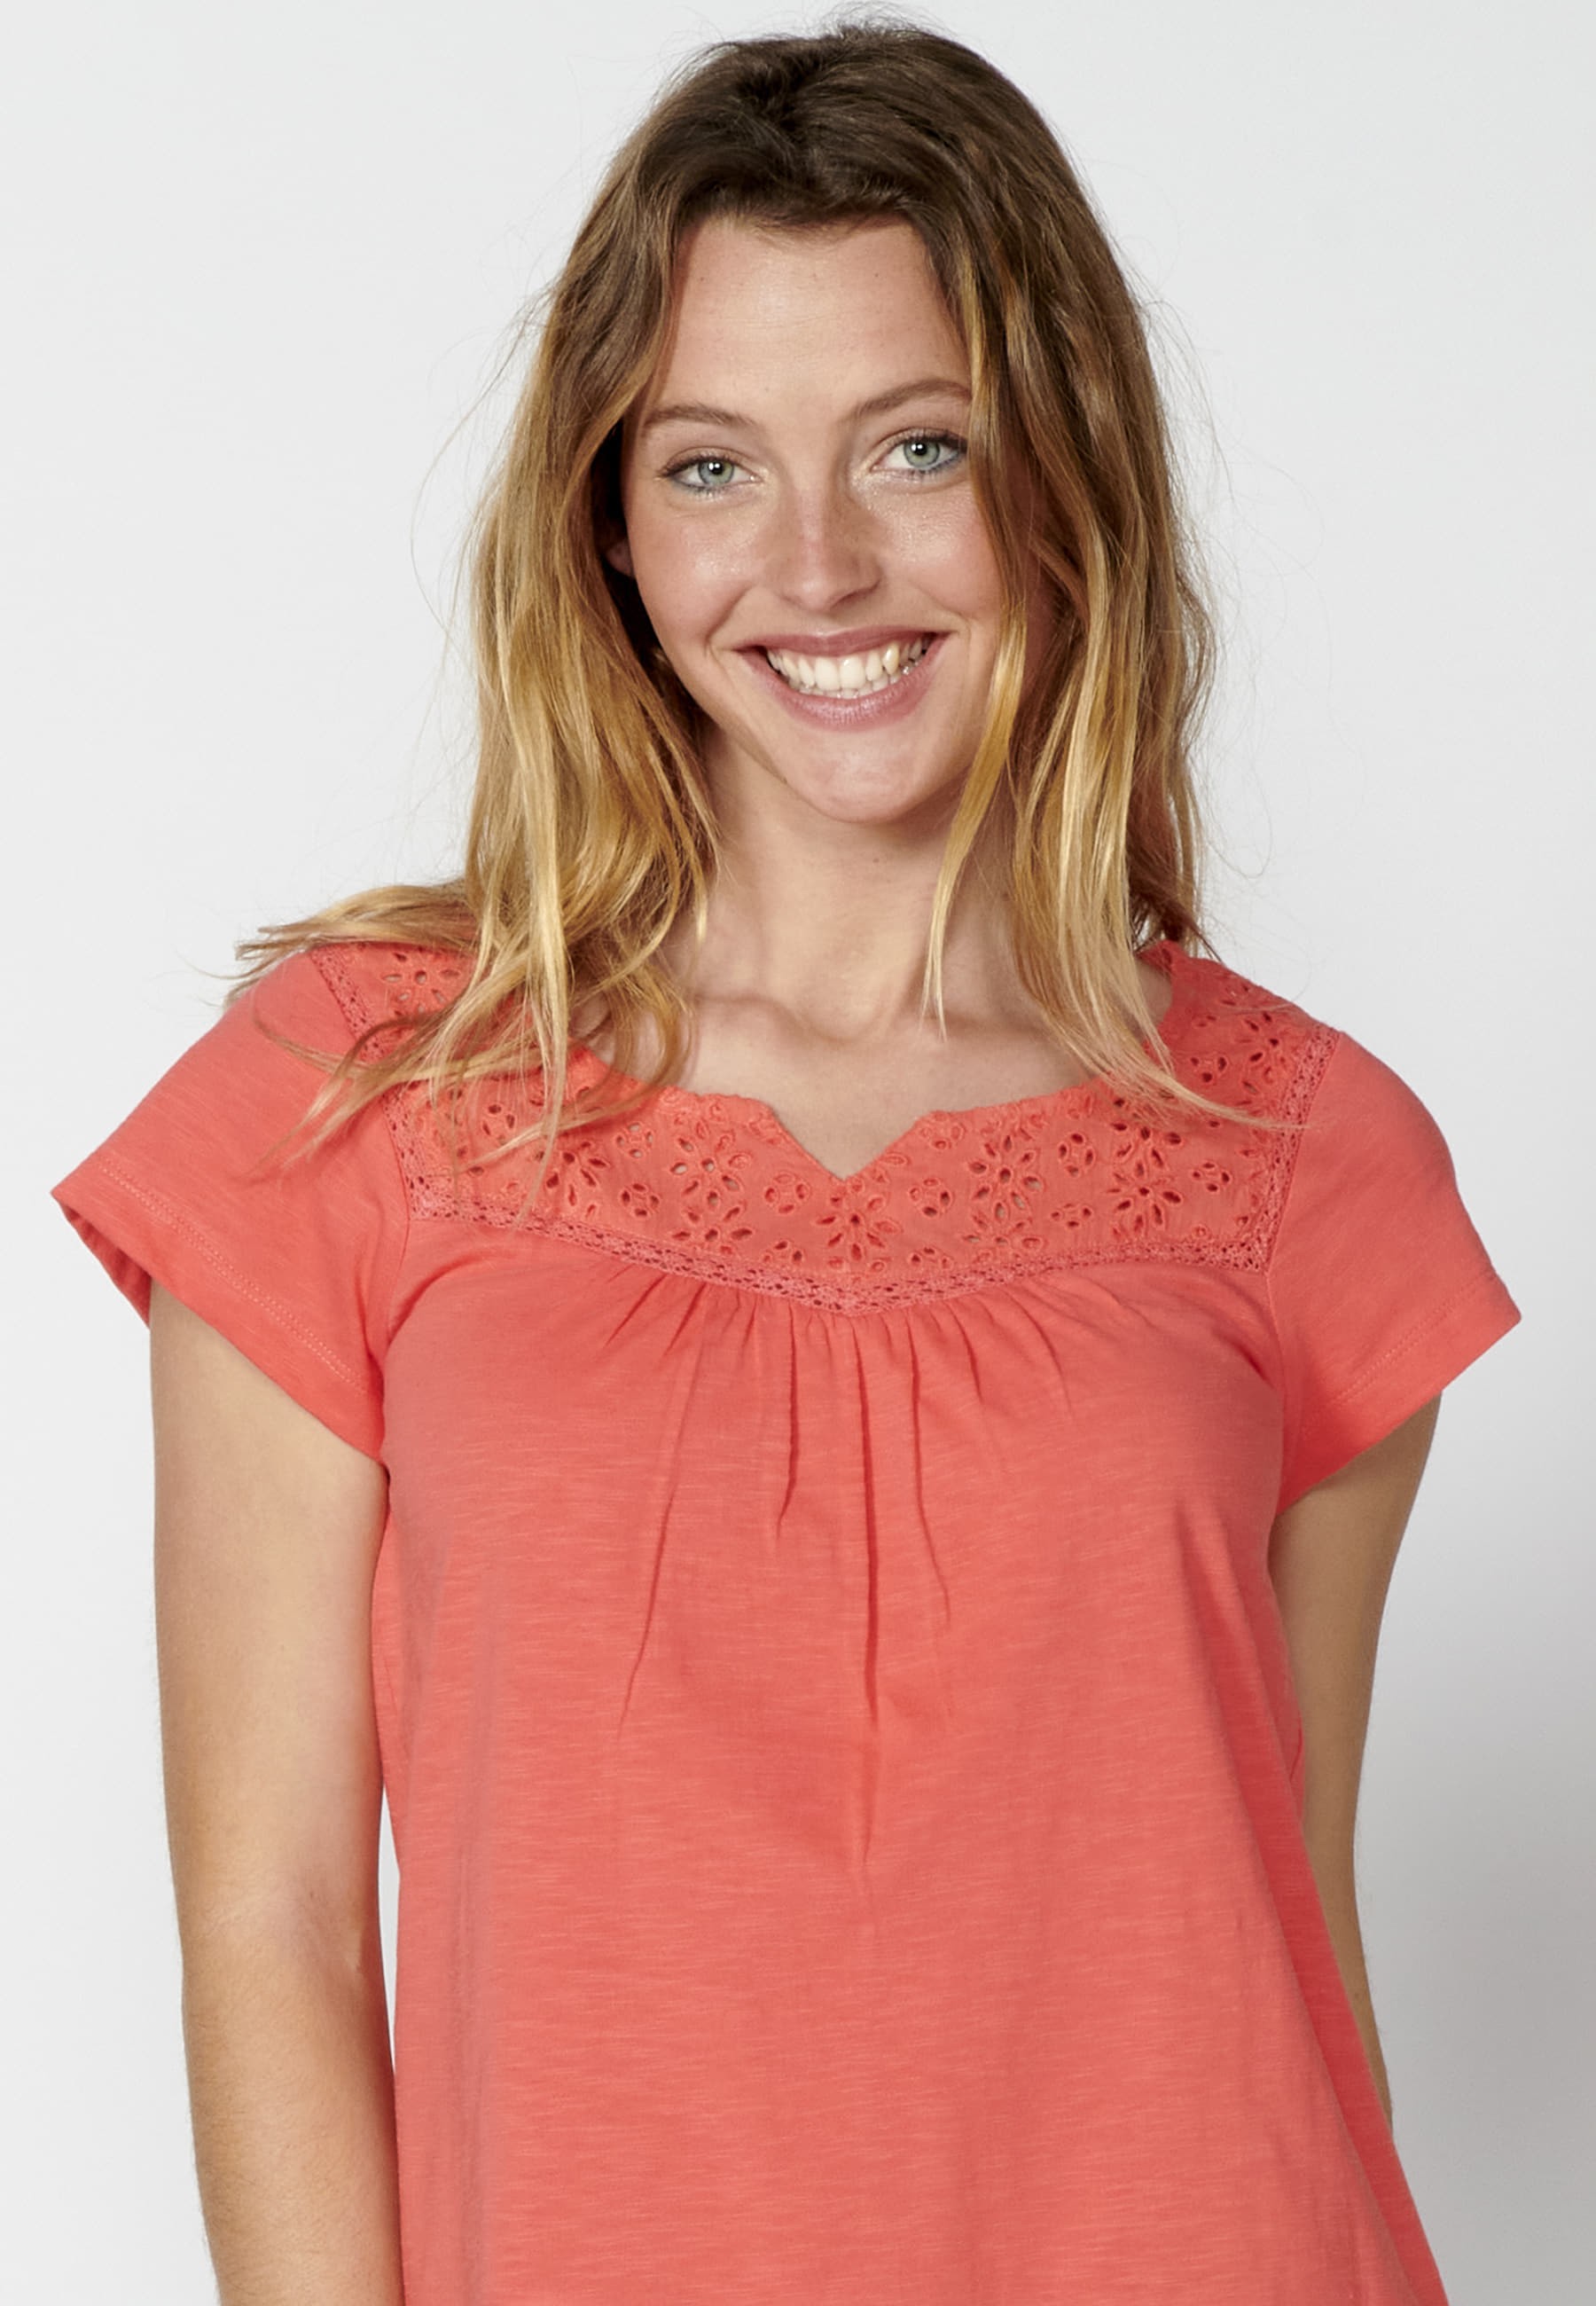 Kurzärmliges Baumwoll-T-Shirt mit herzförmigem Ausschnitt in der Farbe Koralle für Damen